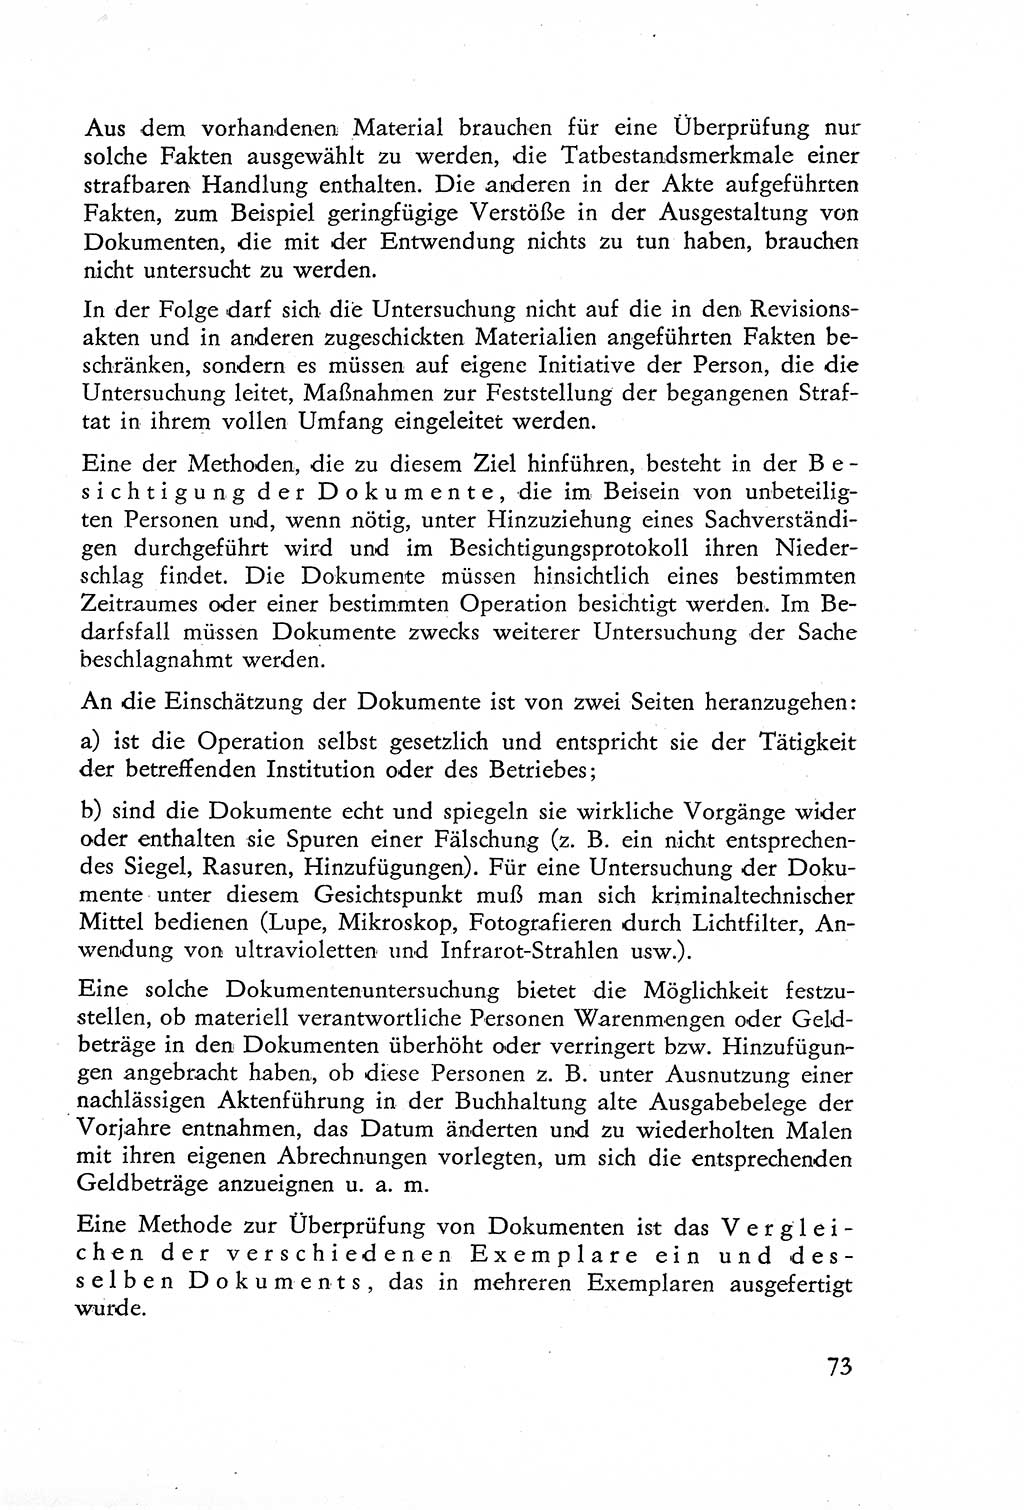 Die Untersuchung einzelner Verbrechensarten [Deutsche Demokratische Republik (DDR)] 1960, Seite 73 (Unters. Verbr.-Art. DDR 1960, S. 73)